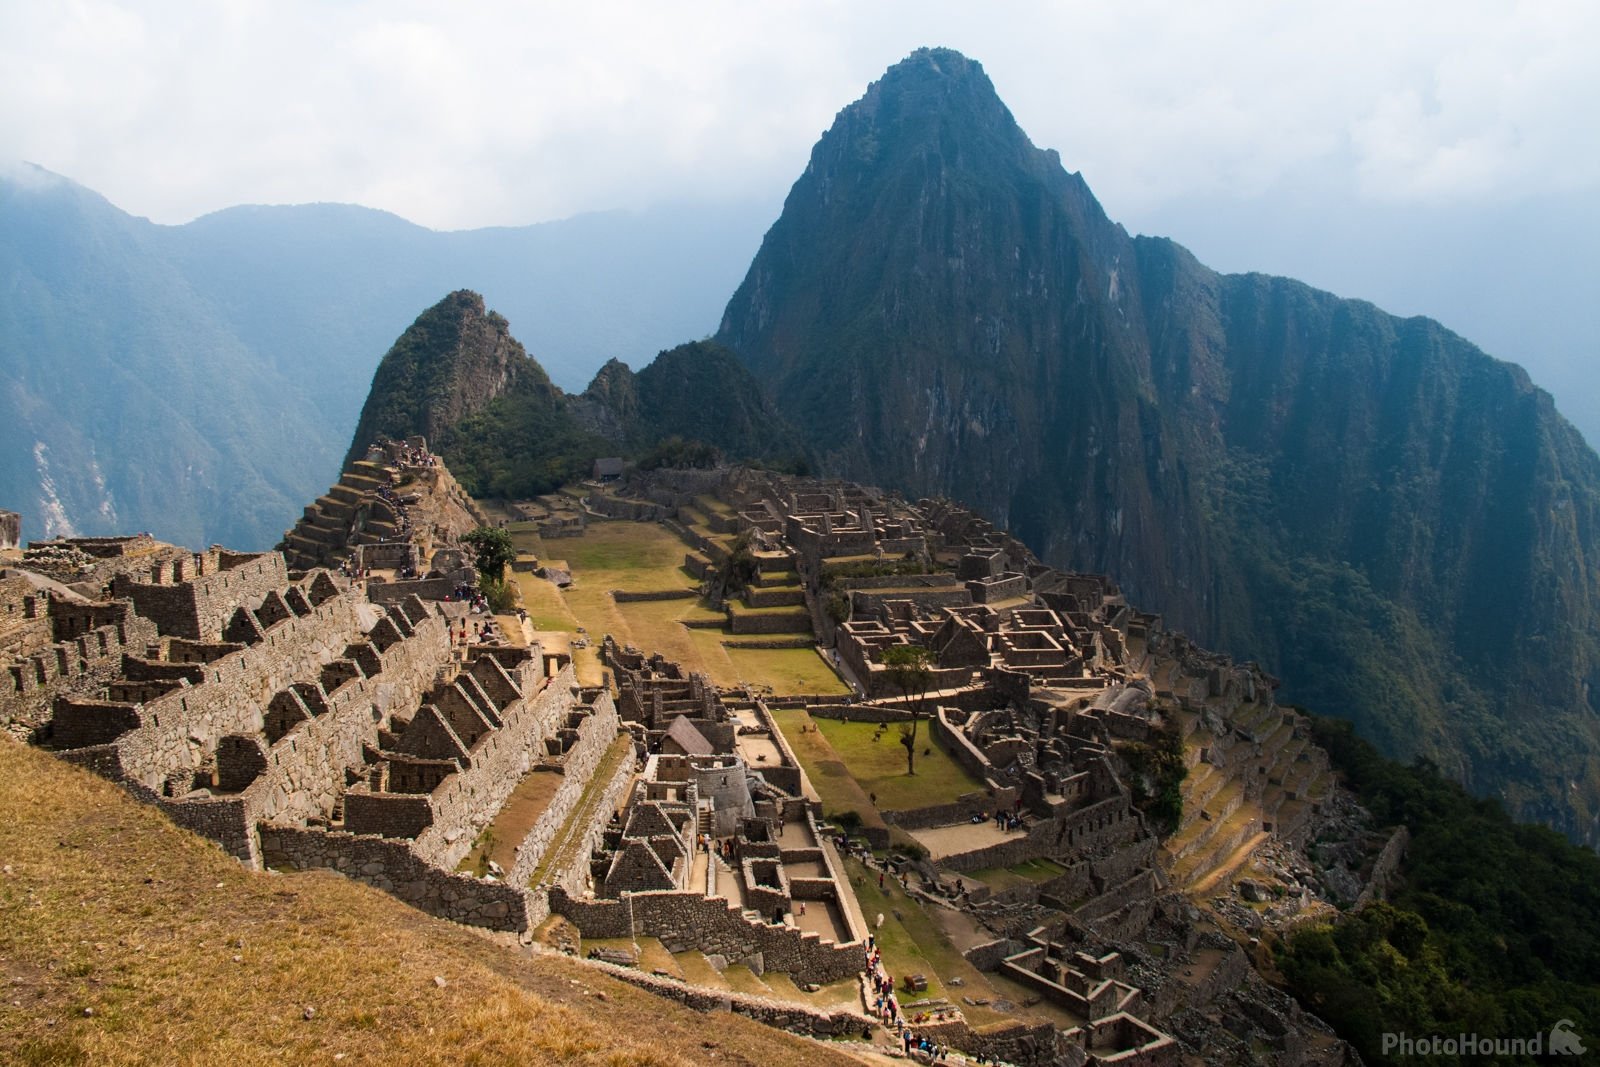 Peru photo locations